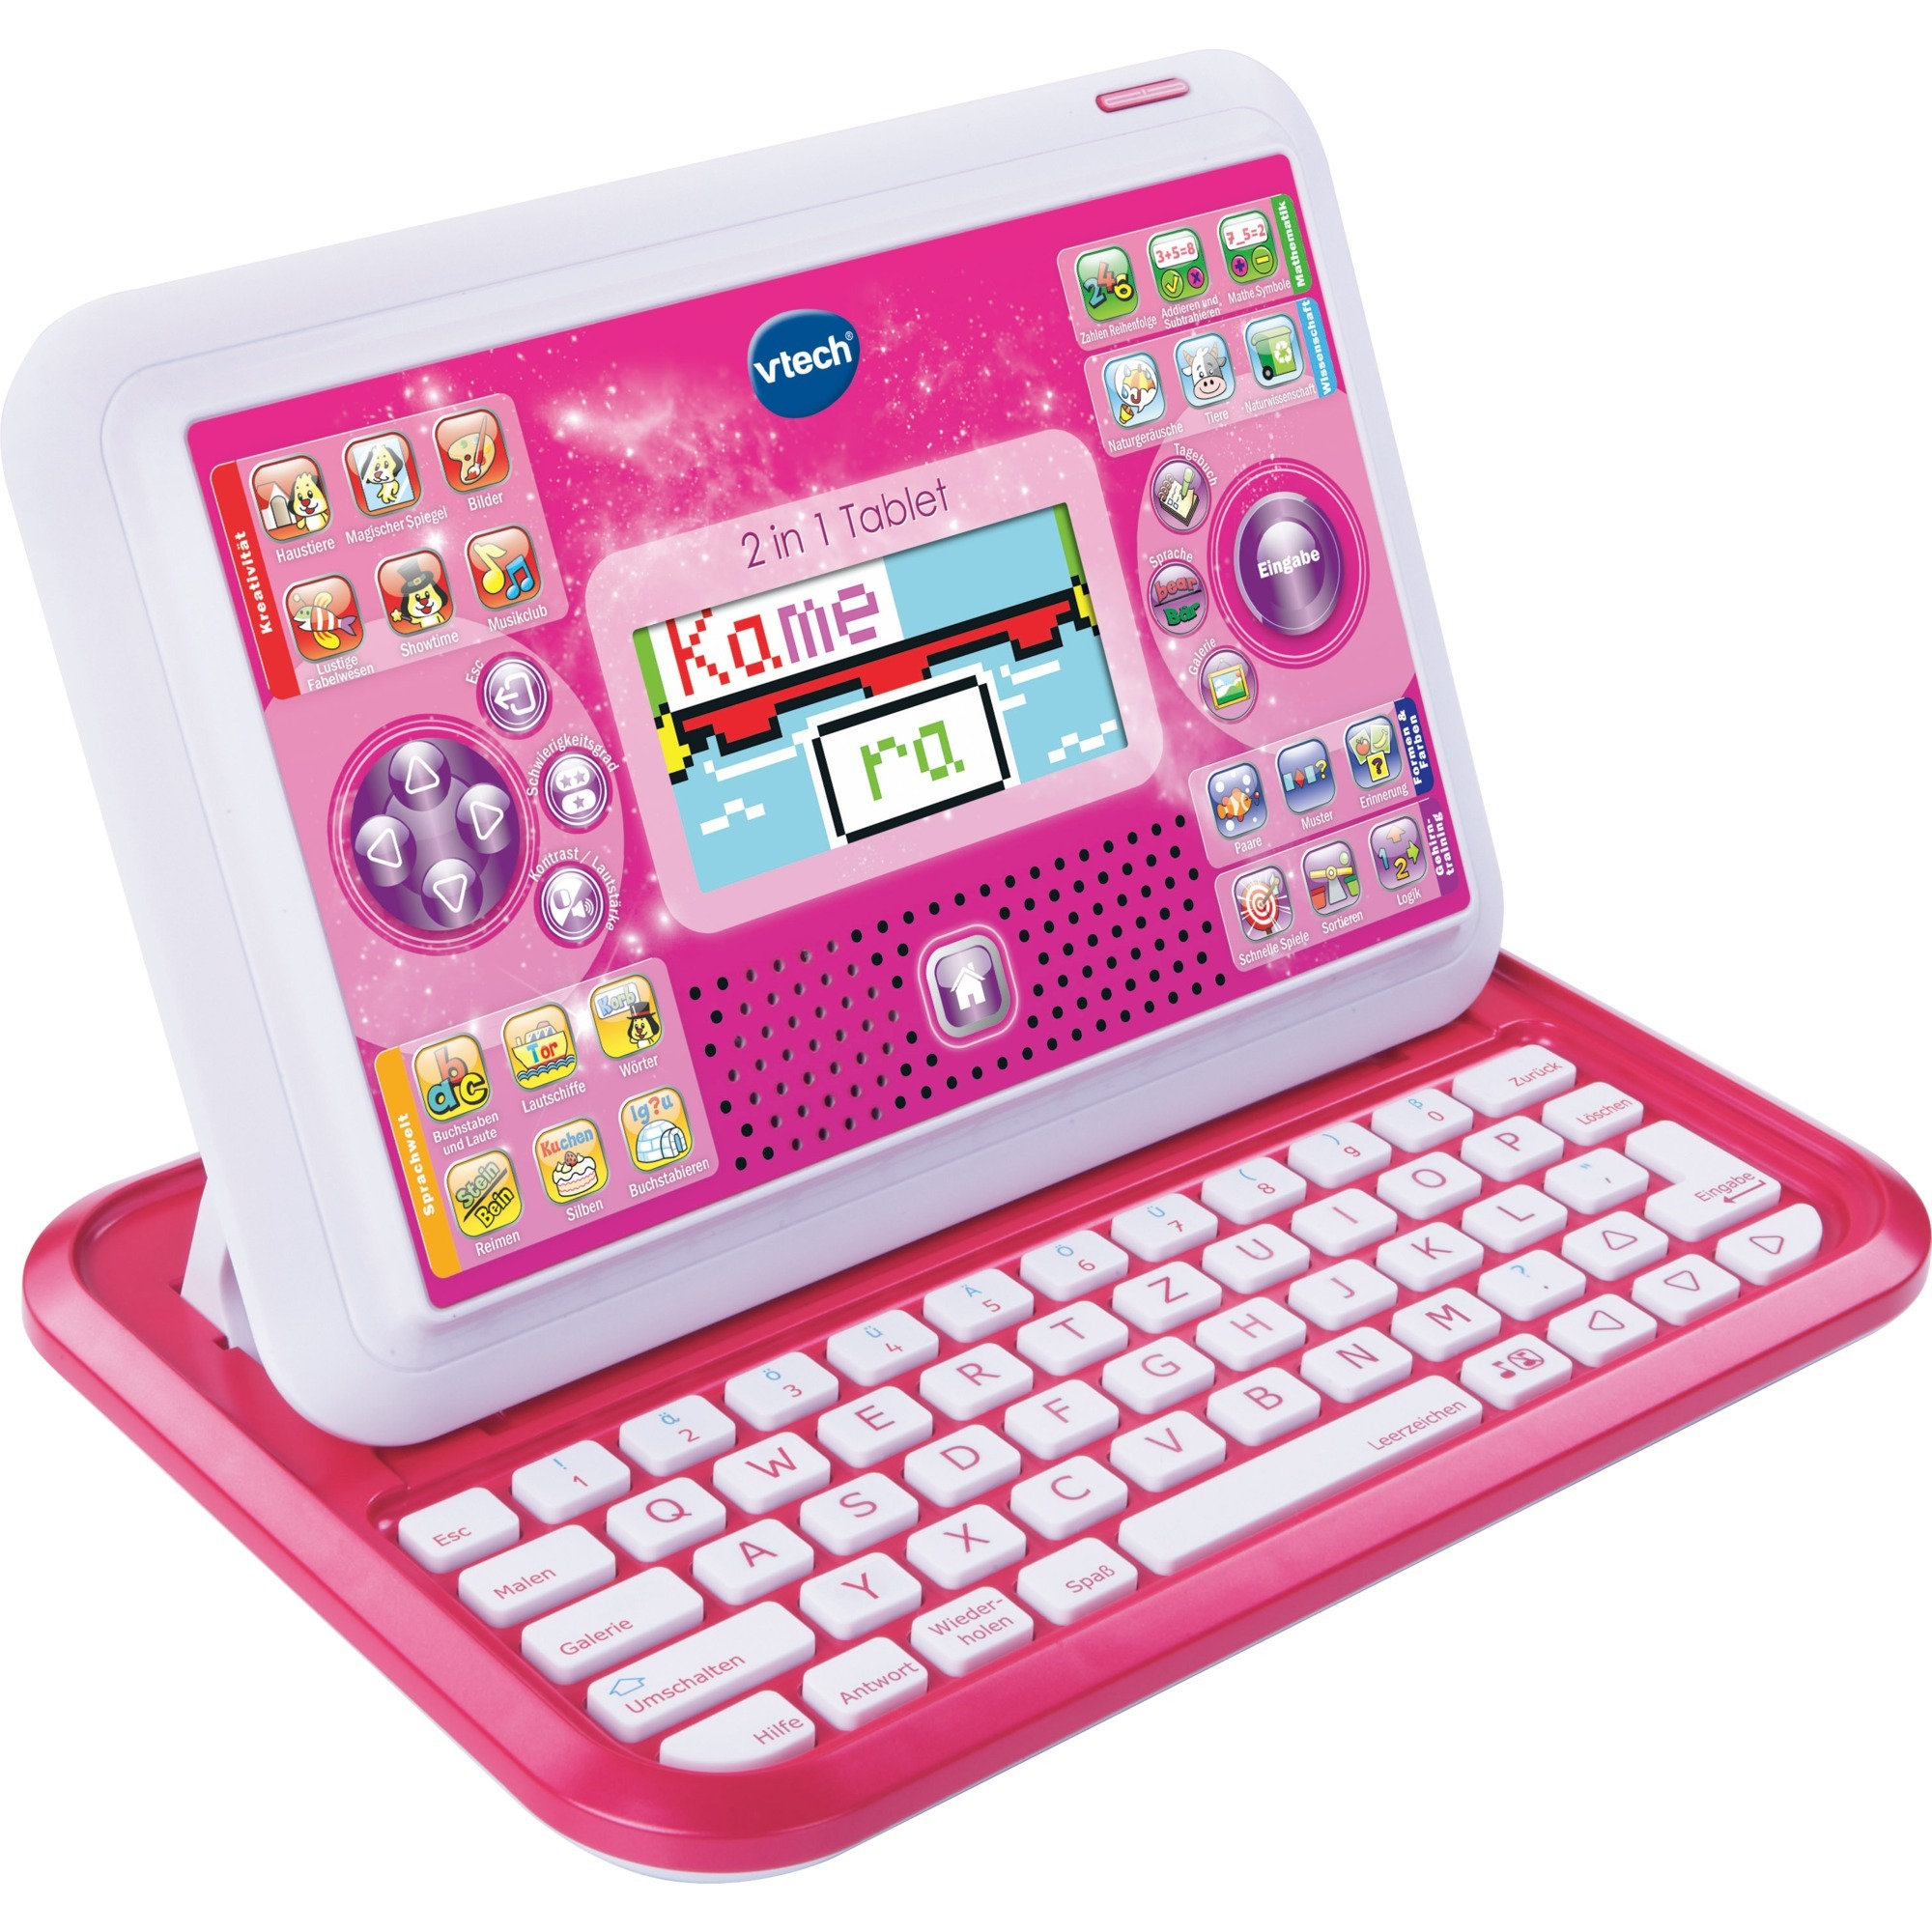 Image of Alternate - 2 in 1 Tablet pink, Lerncomputer online einkaufen bei Alternate